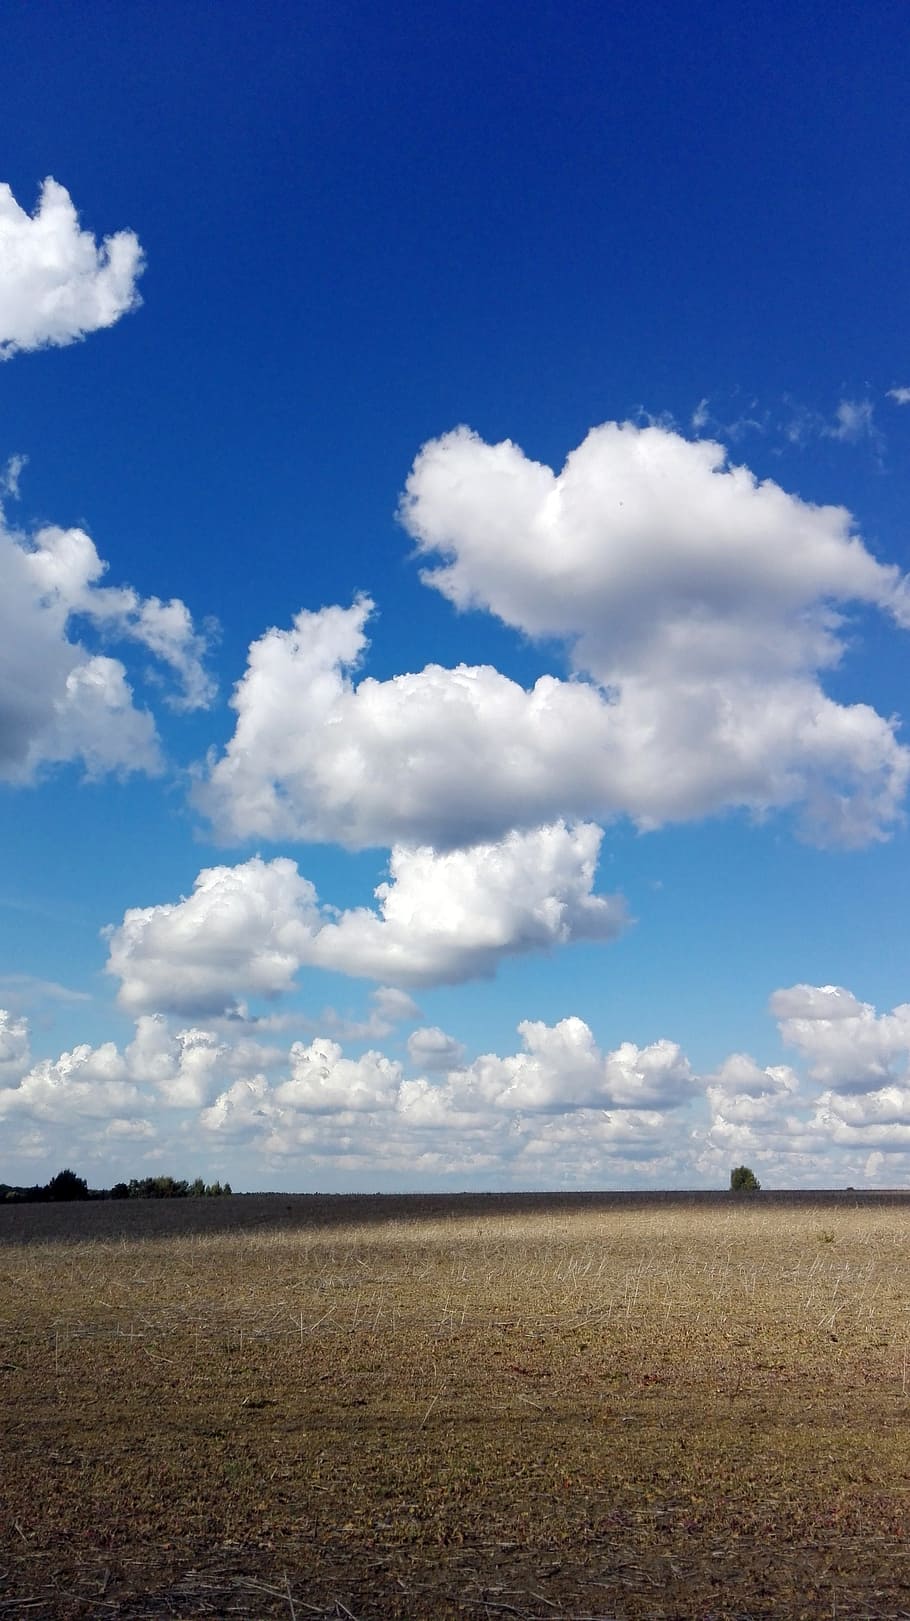 구름, 하늘, 필드, 구름-하늘, 땅, 조용한 장면, 환경, 풍경, 평온, 들